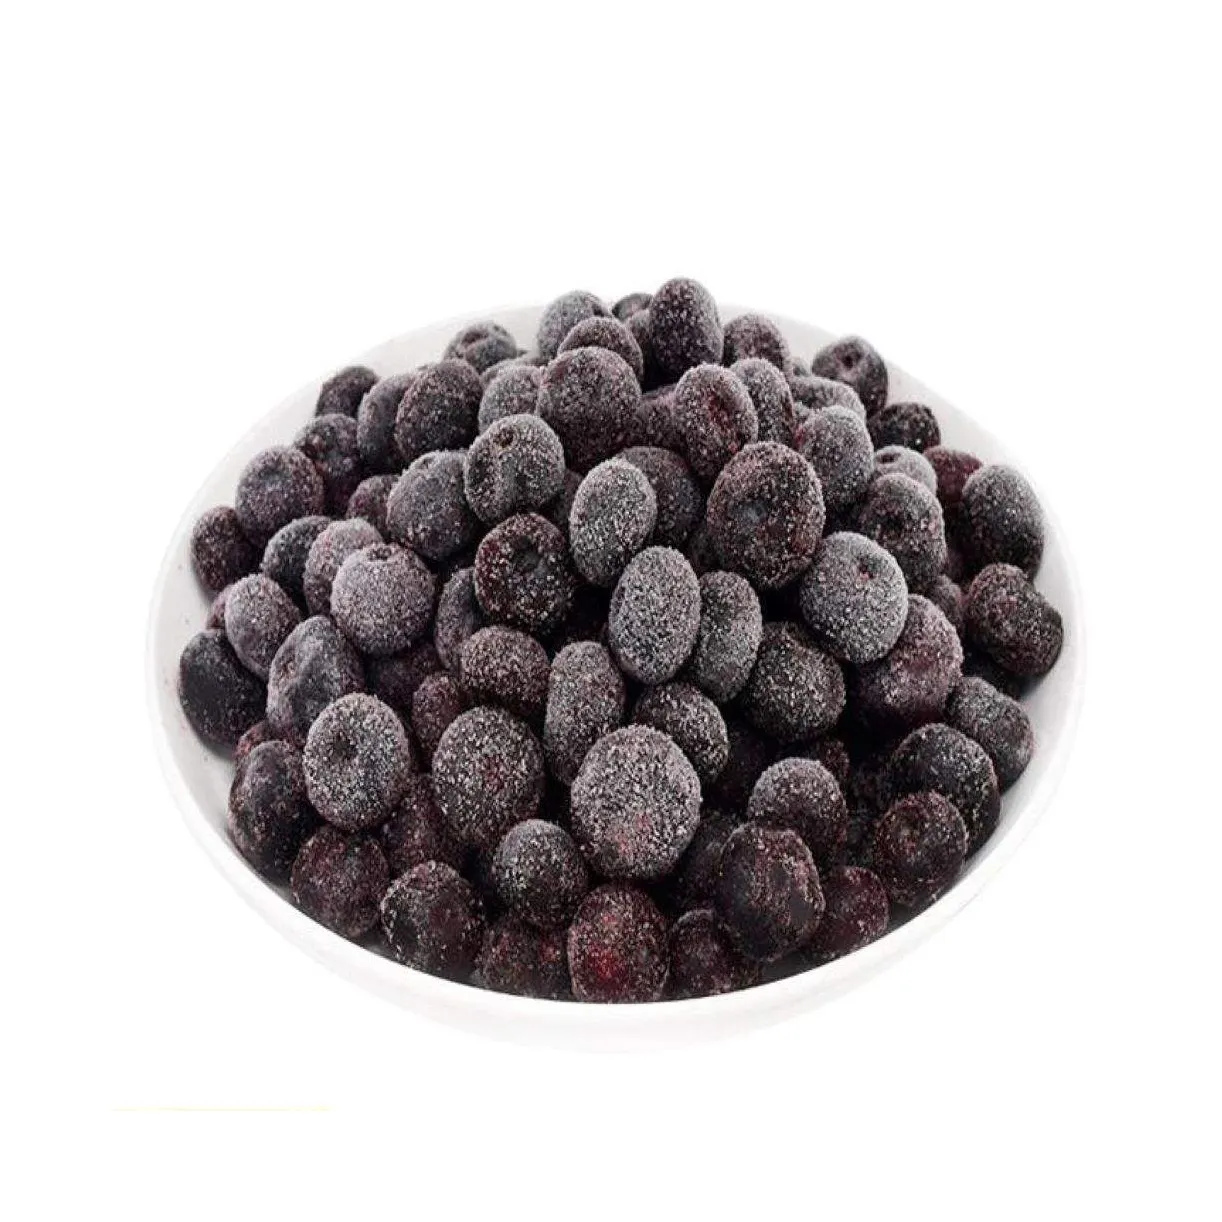 Nhà cung cấp bán buôn giá tốt nhất Quả Việt Quất trái cây đông lạnh ifq Blueberry đông lạnh Blueberry nhà sản xuất bán buôn